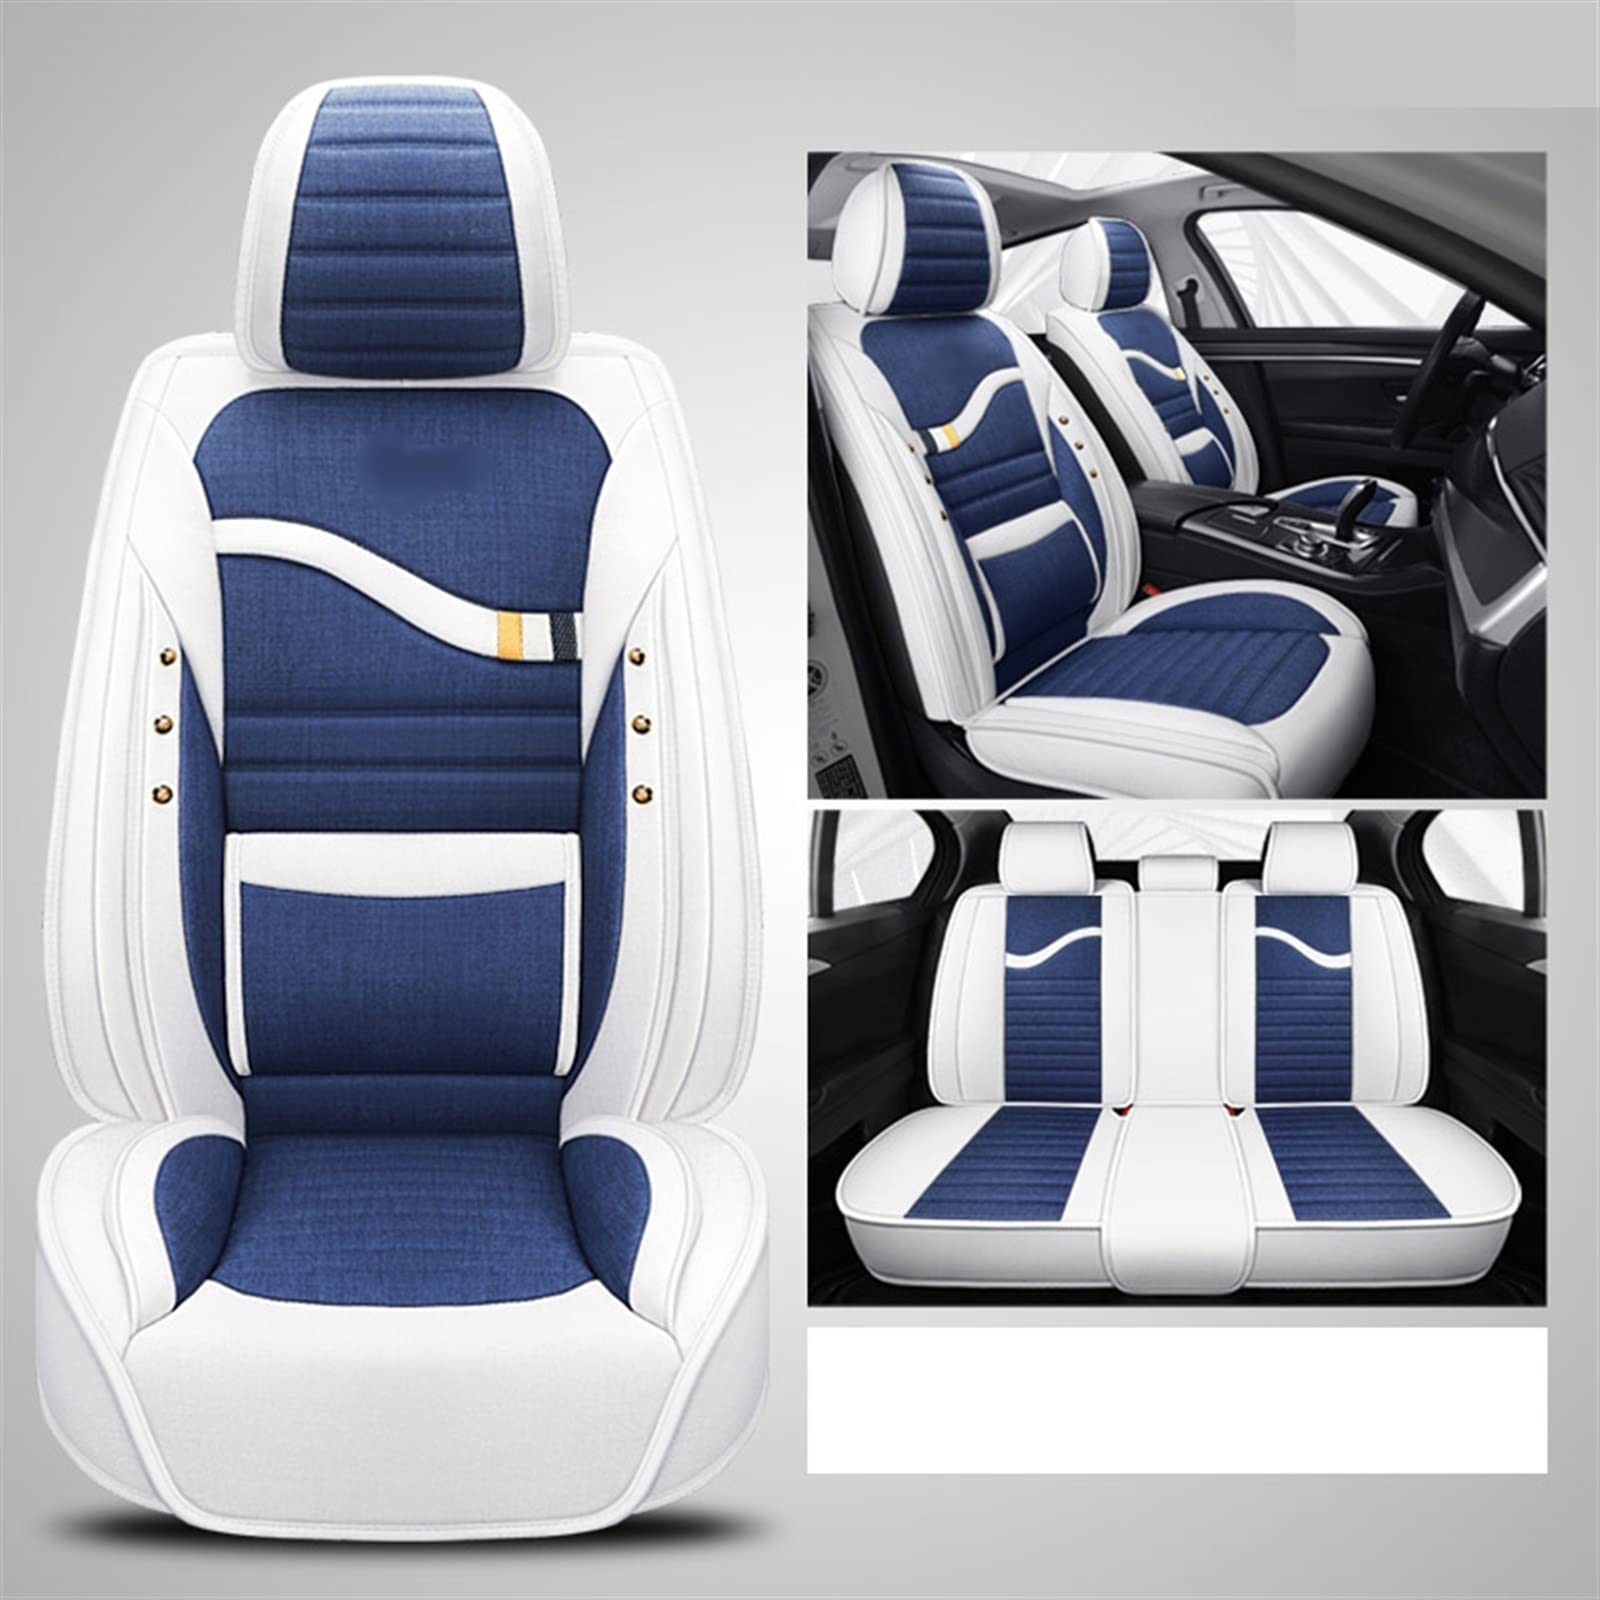 Auto-Flachs-Sitzbezüge Für Sitz Für Leon Mk2 Für Ibiza Für Ateca Für Arona Für Altea XL Vorne + Hinten 5 Sitz Auto Sitzbezüge (Farbe : Blau) von IMLAM